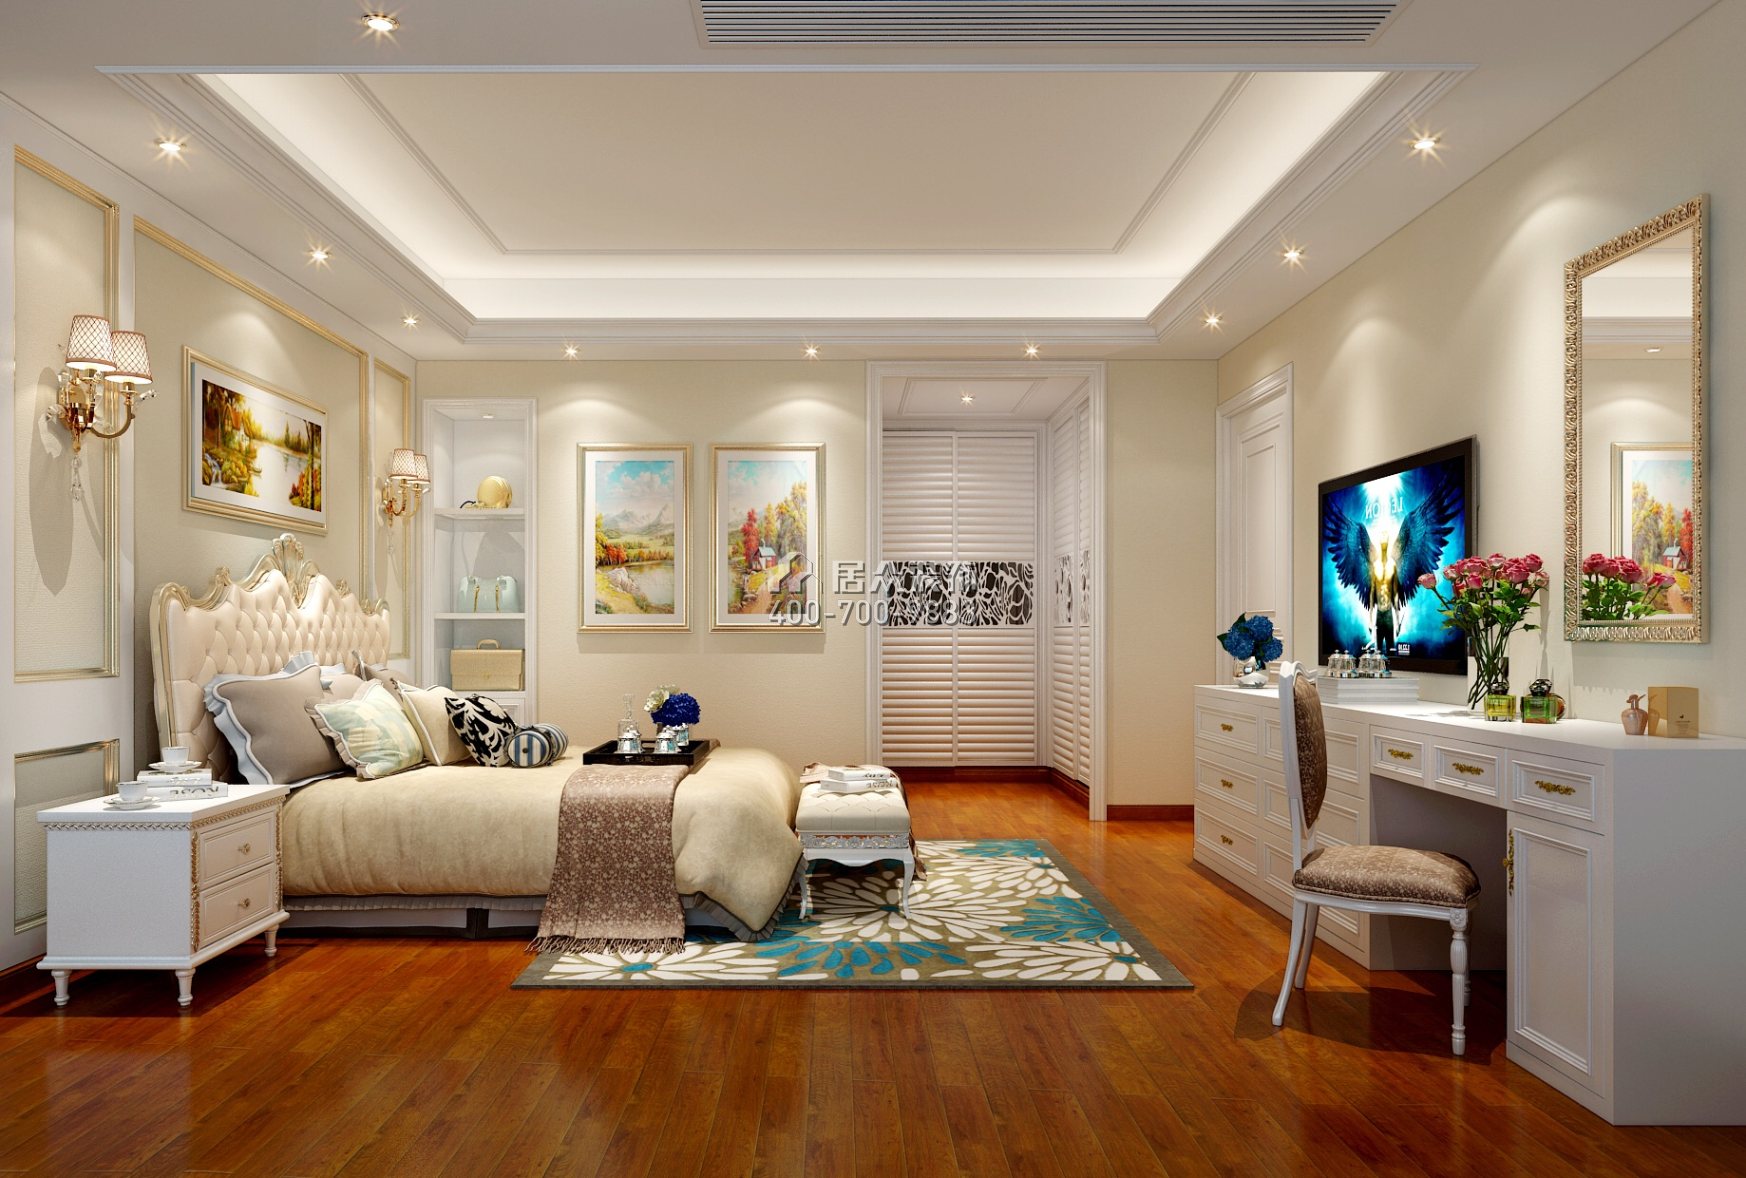 维港半岛214平方米欧式风格平层户型卧室装修效果图